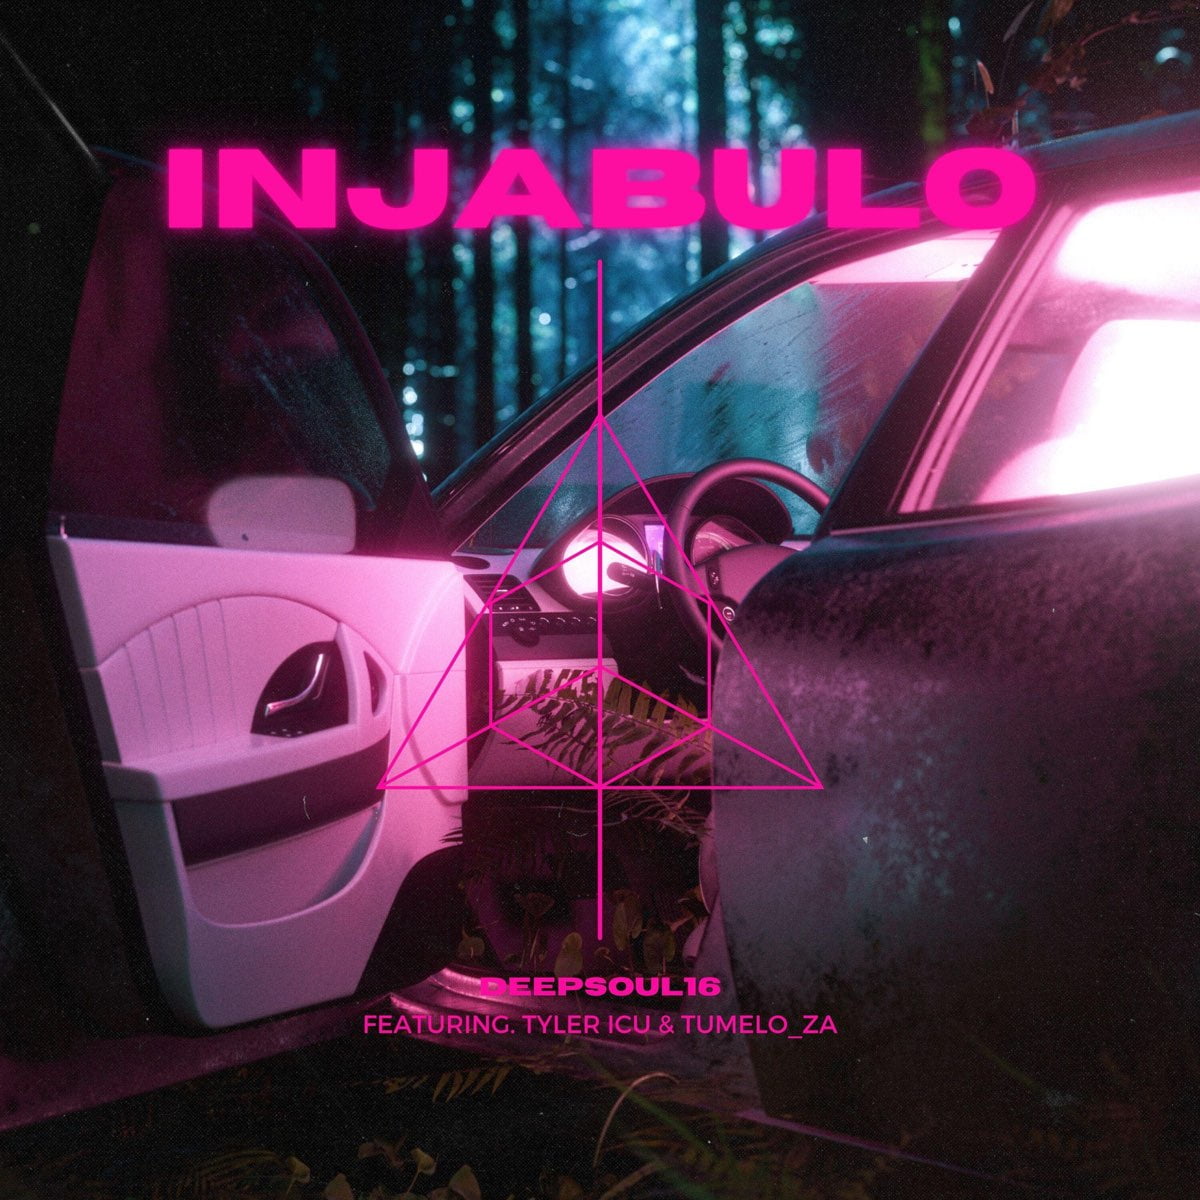 Deepsoul16 – Injabulo ft Tyler ICU & Tumelo_ZA mp3 download free lyrics